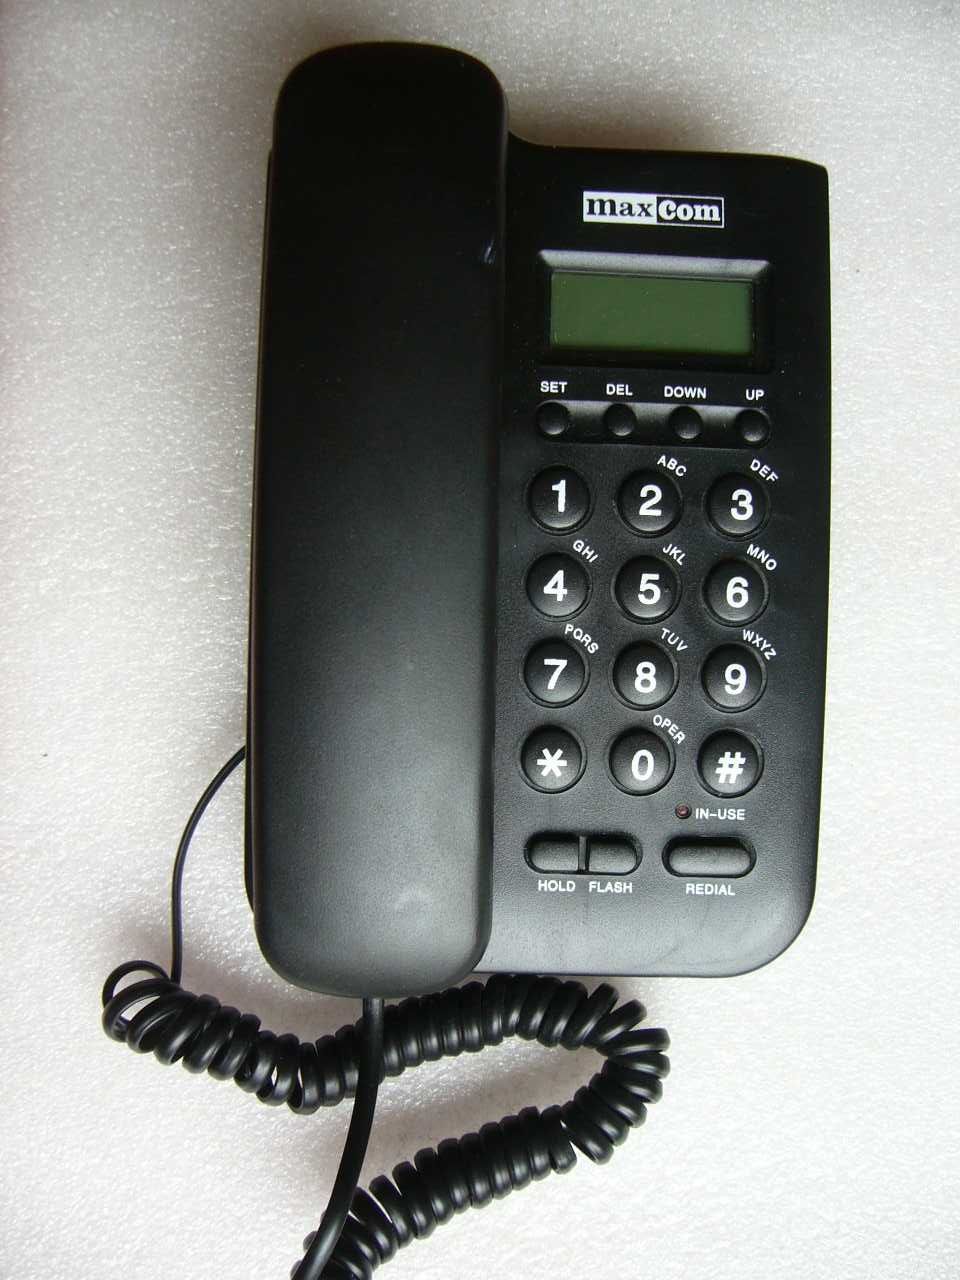 Telefon stacjonarny maxcom KXT 100